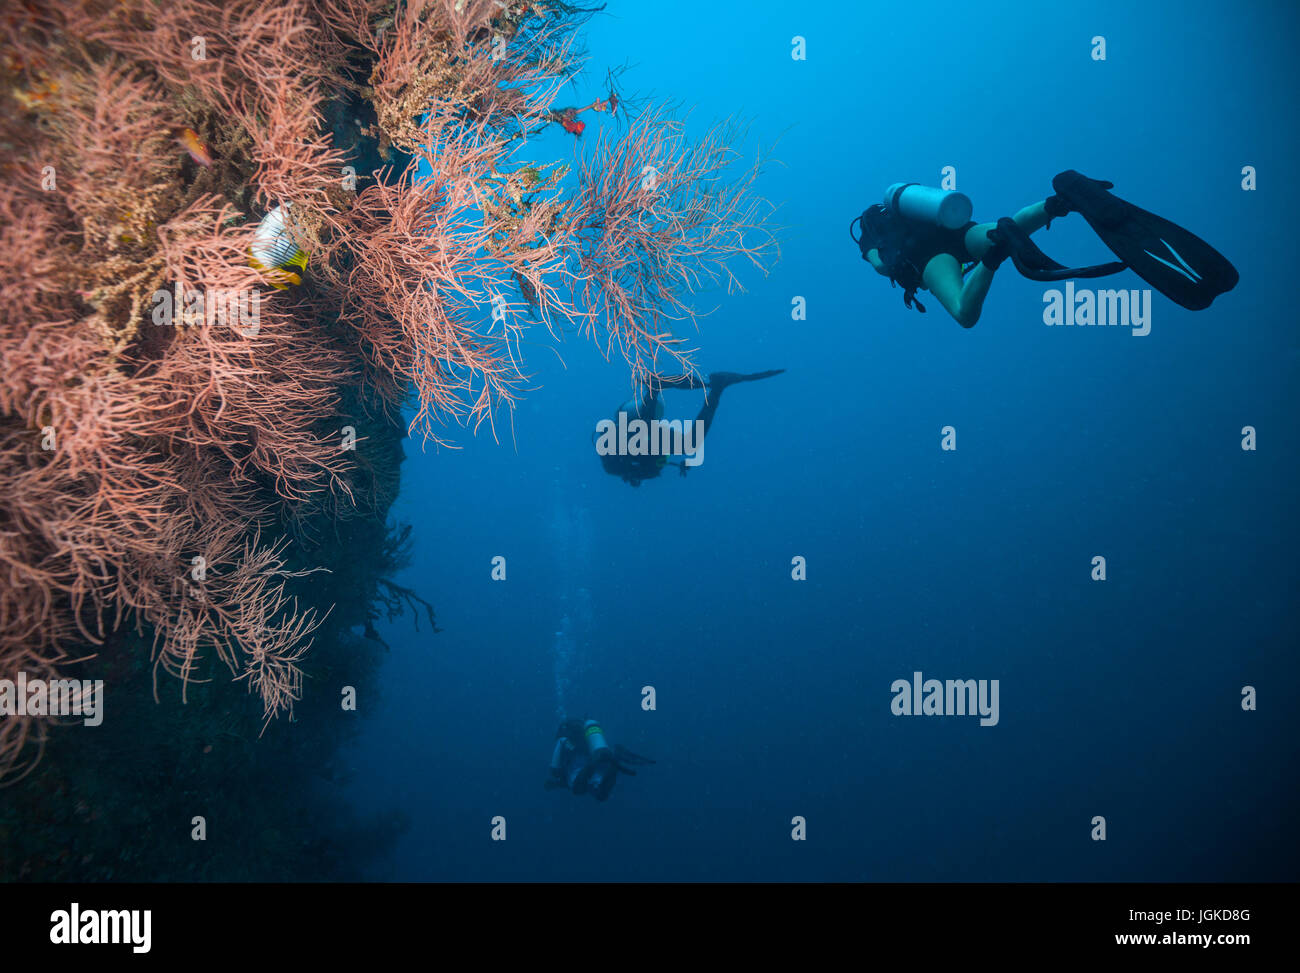 Gruppe von Tauchern Korallenriffe, Atolle der Malediven, Indischer Ozean zu erkunden. Viel schöne farbige kleine Fische und Weichkorallen im Vordergrund Stockfoto